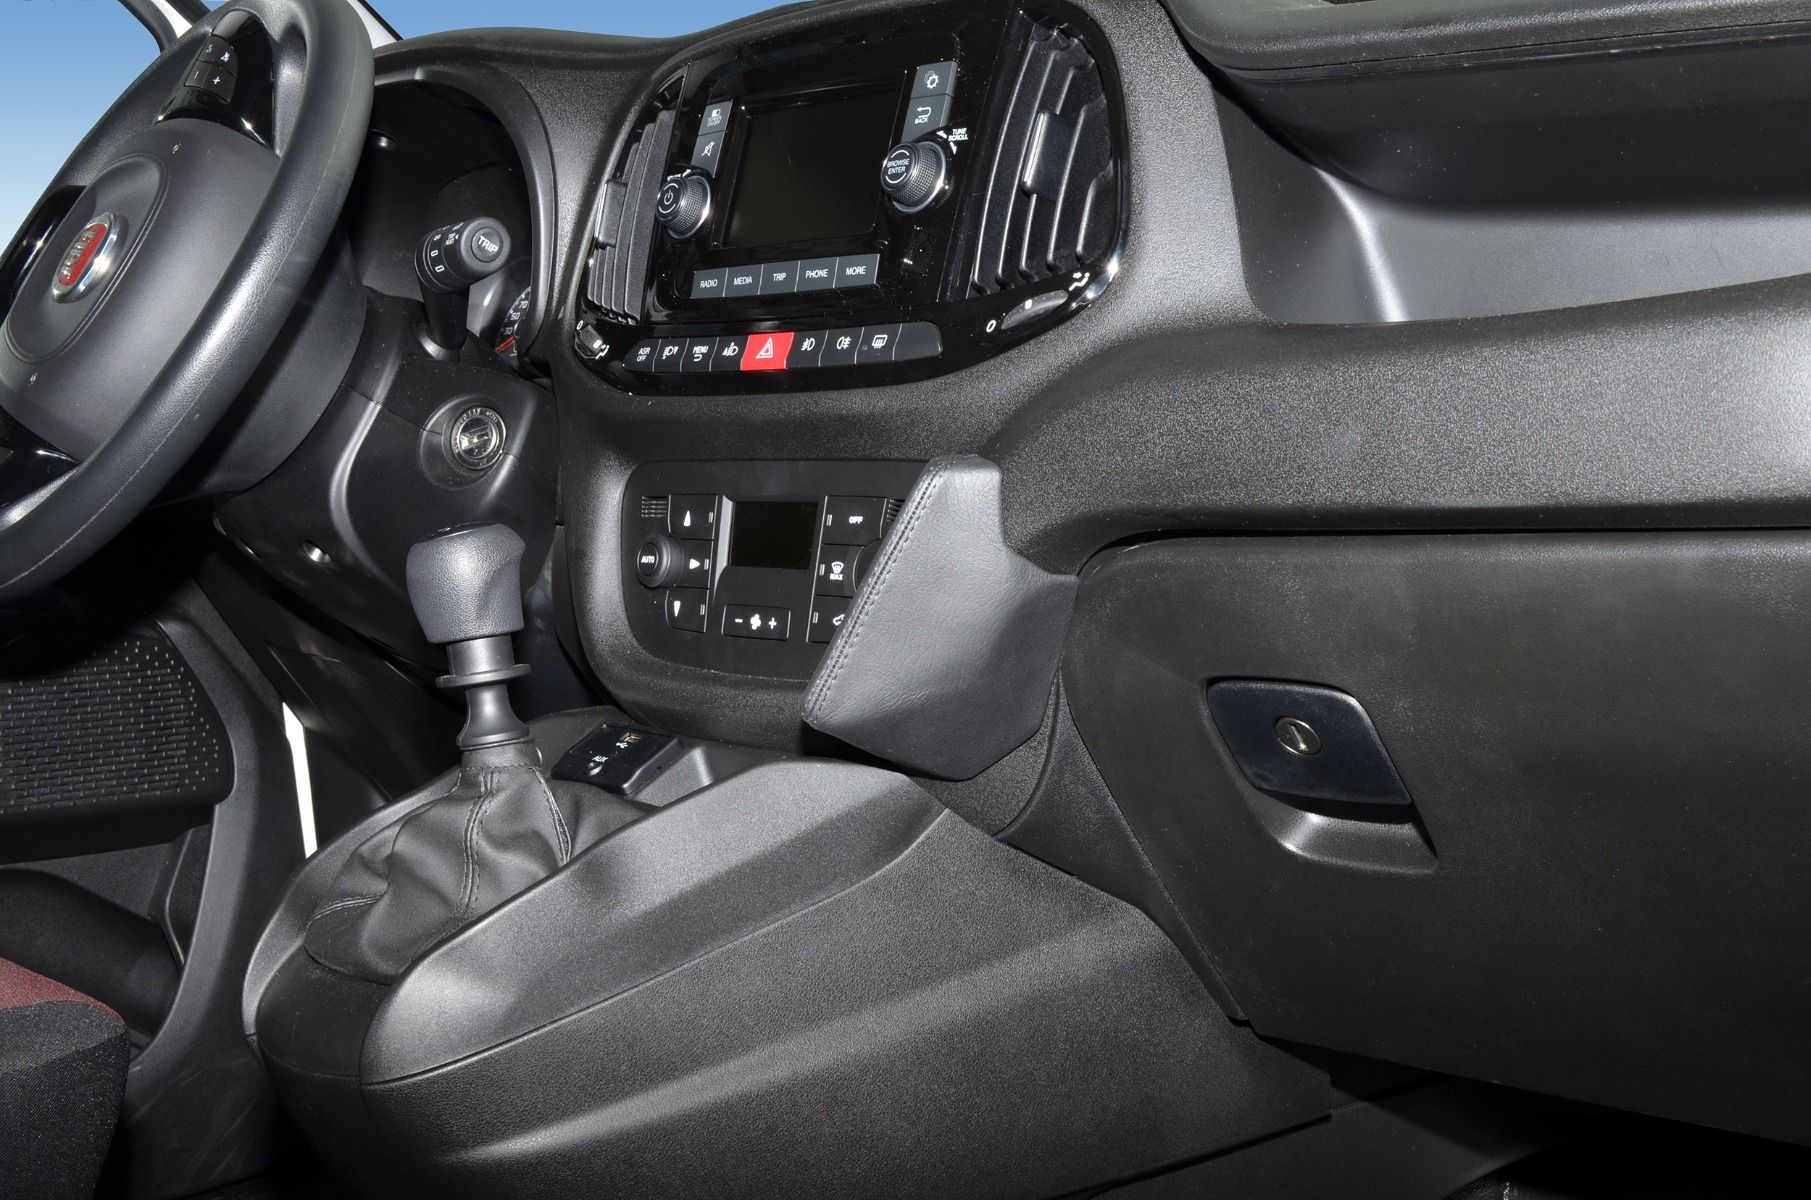 Kuda console Fiat Doblo 2015- Zwart